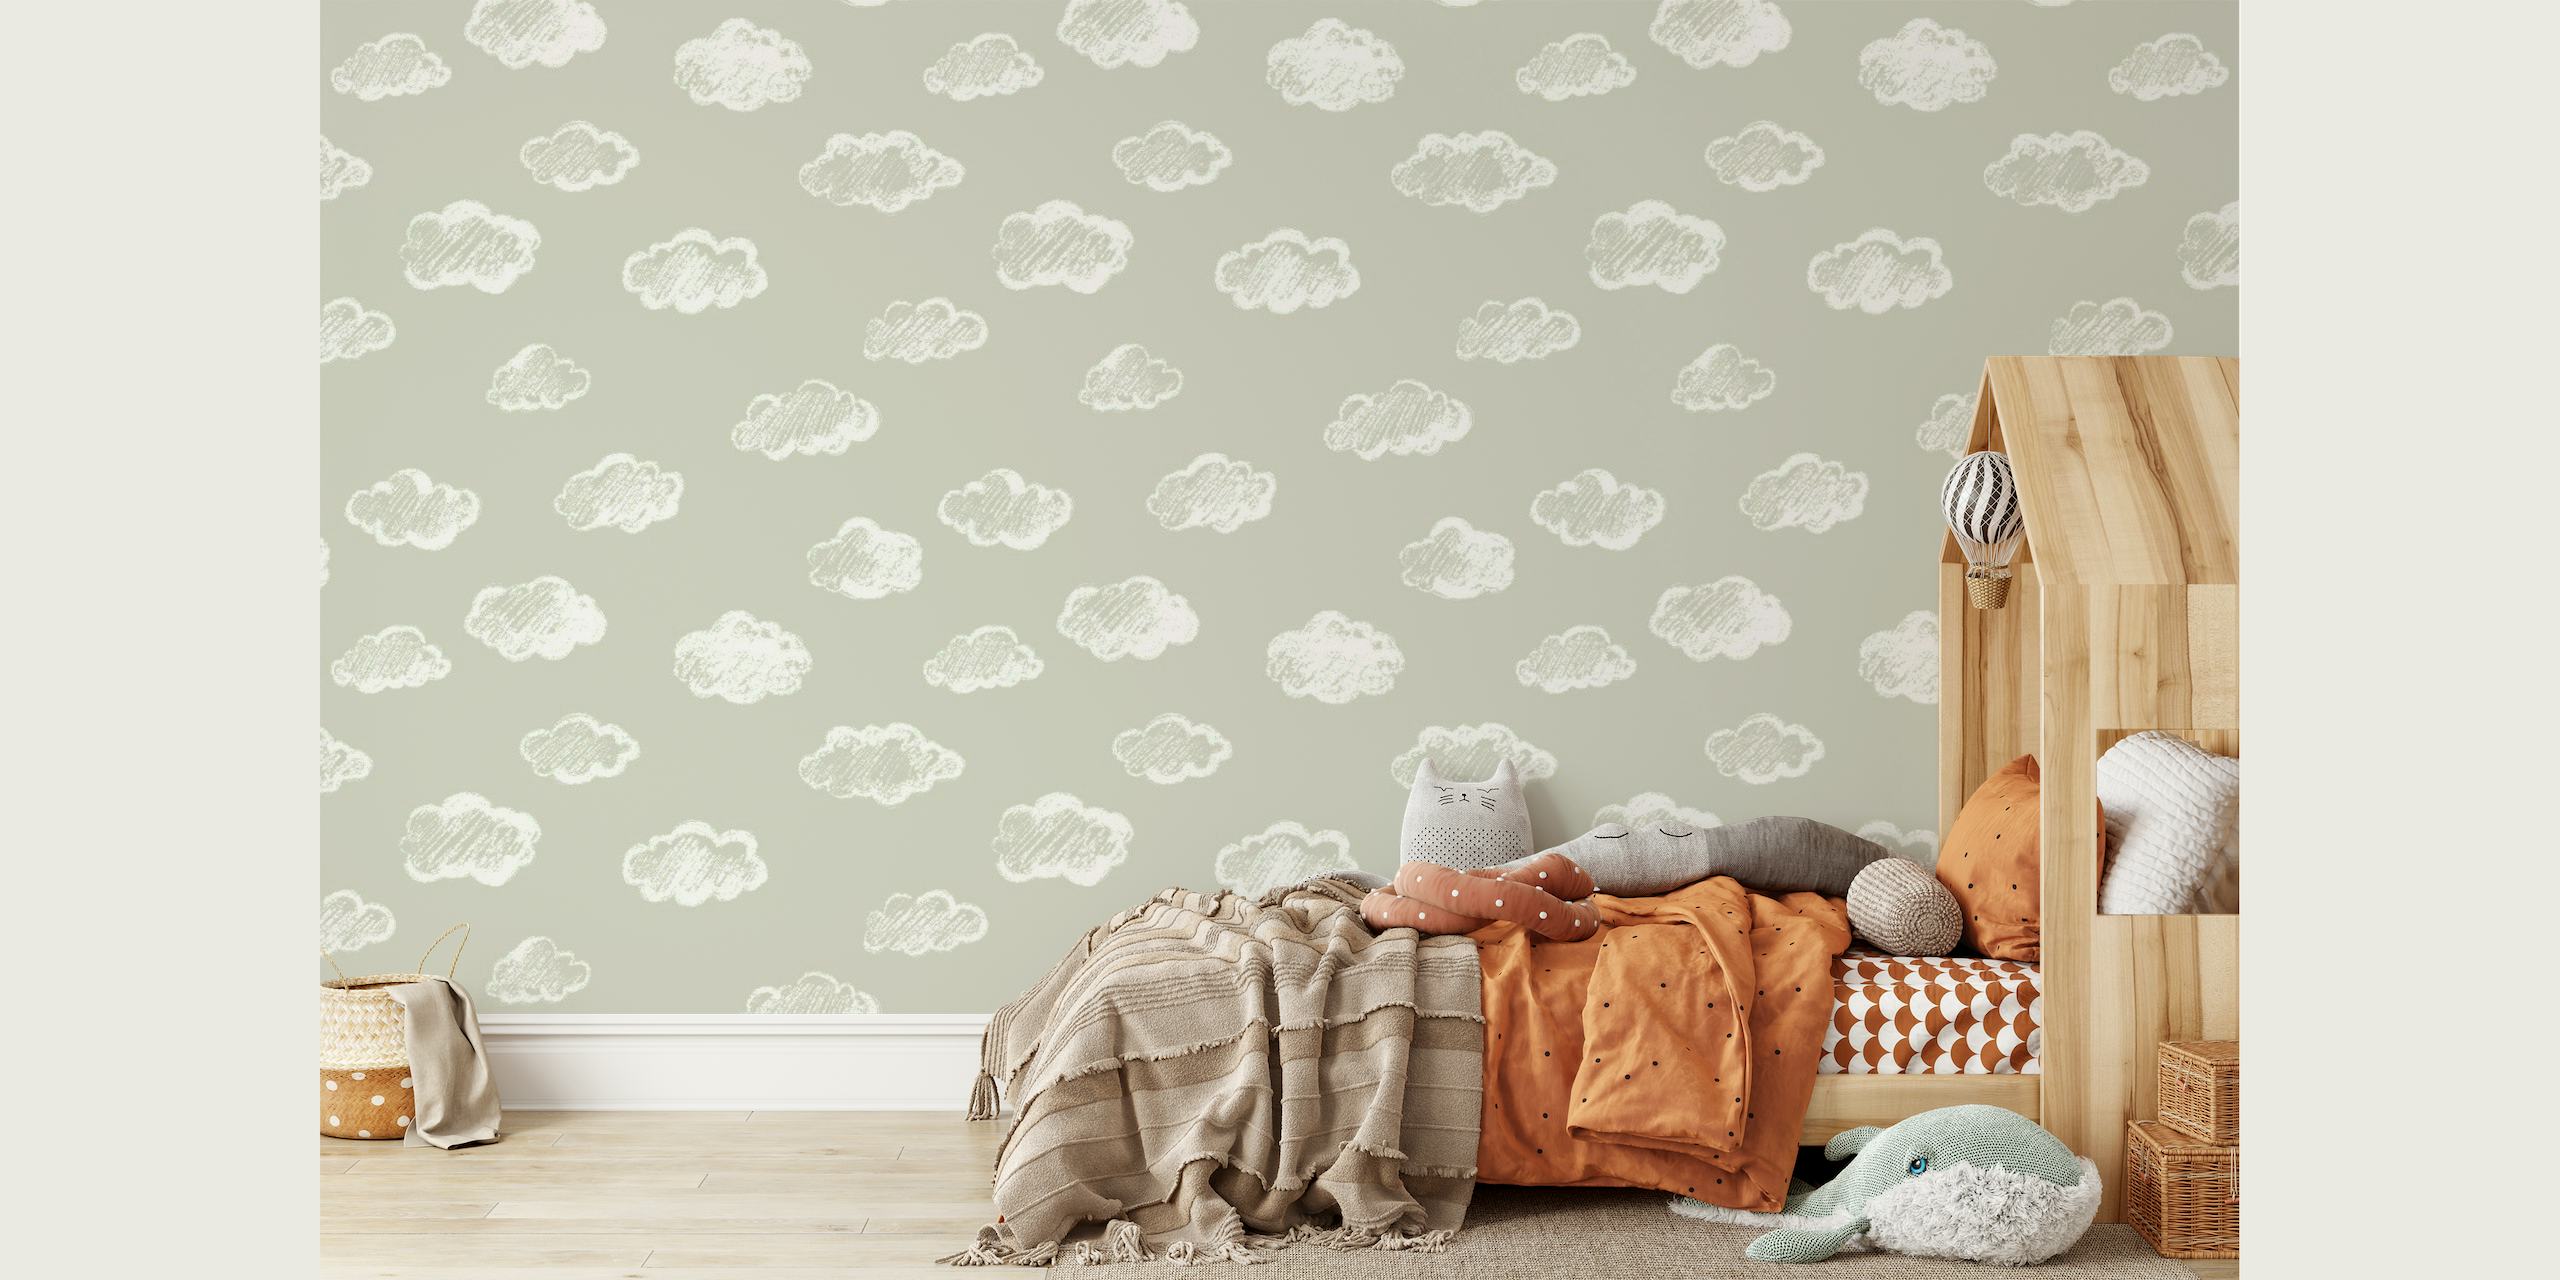 Decorazione murale con forme di nuvole bianche gessose su sfondo grigio tortora